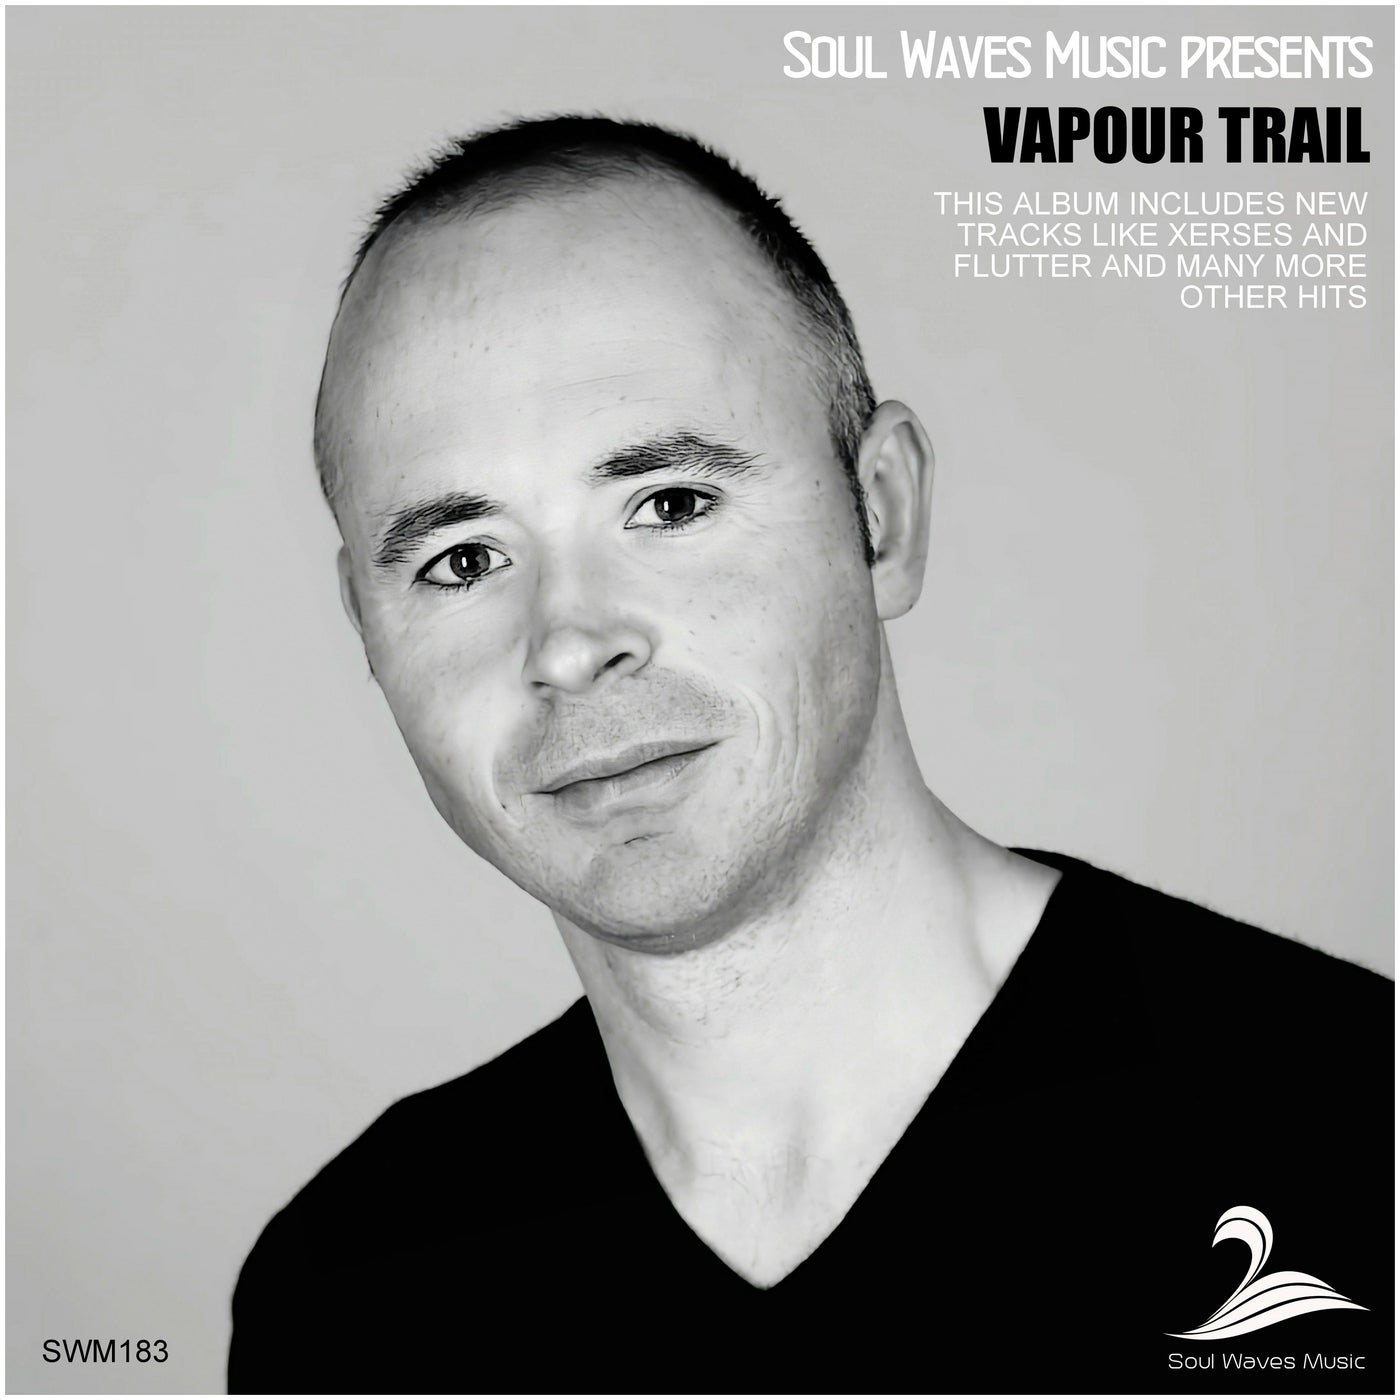 Soul Waves Music pres. Vapour Trail